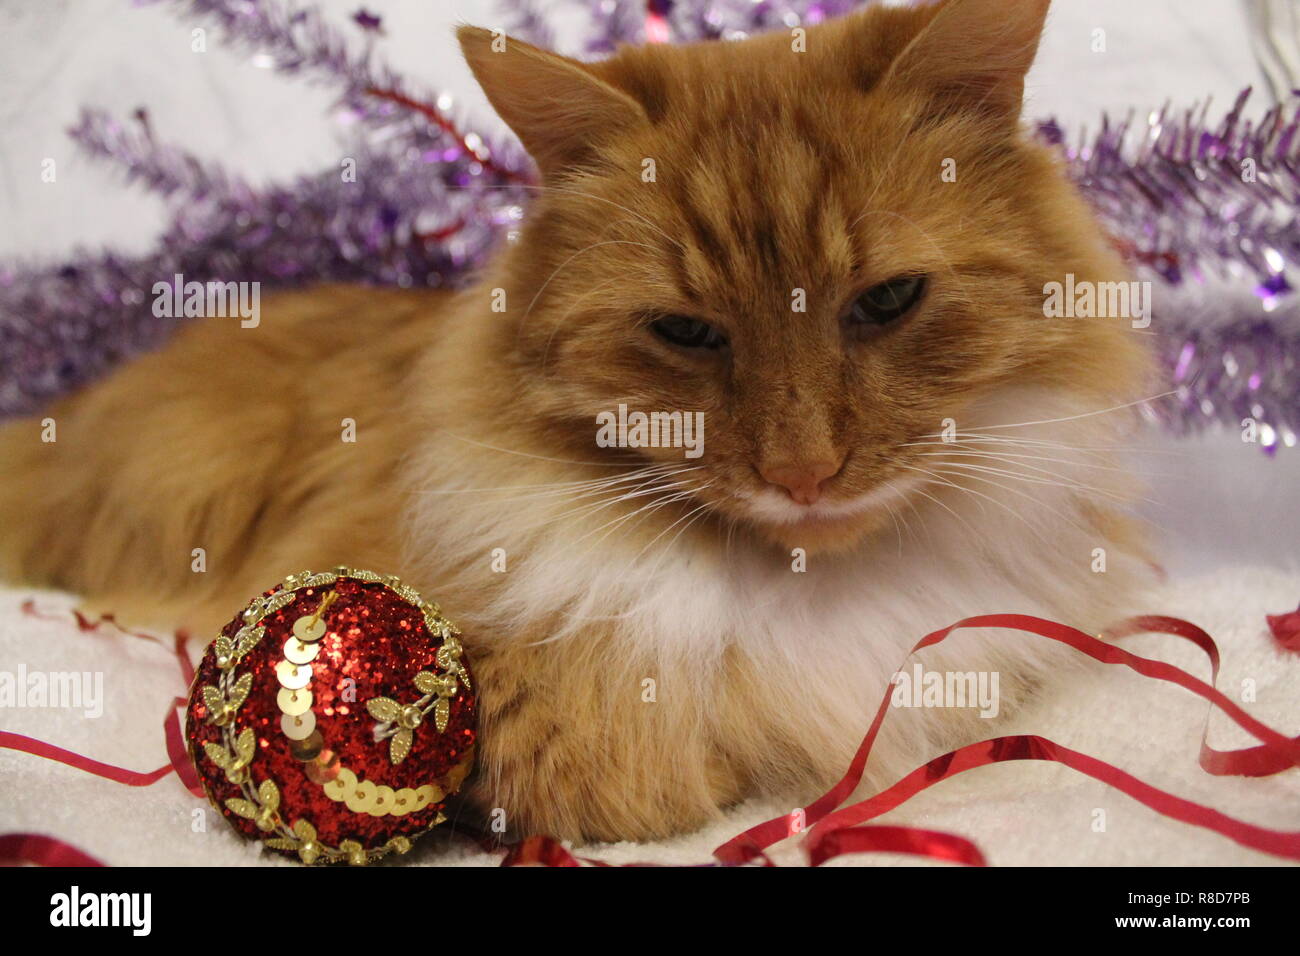 Couleur orange vif fluffy cat en décoration de Noël se préparer à célébrer les vacances d'hiver Banque D'Images